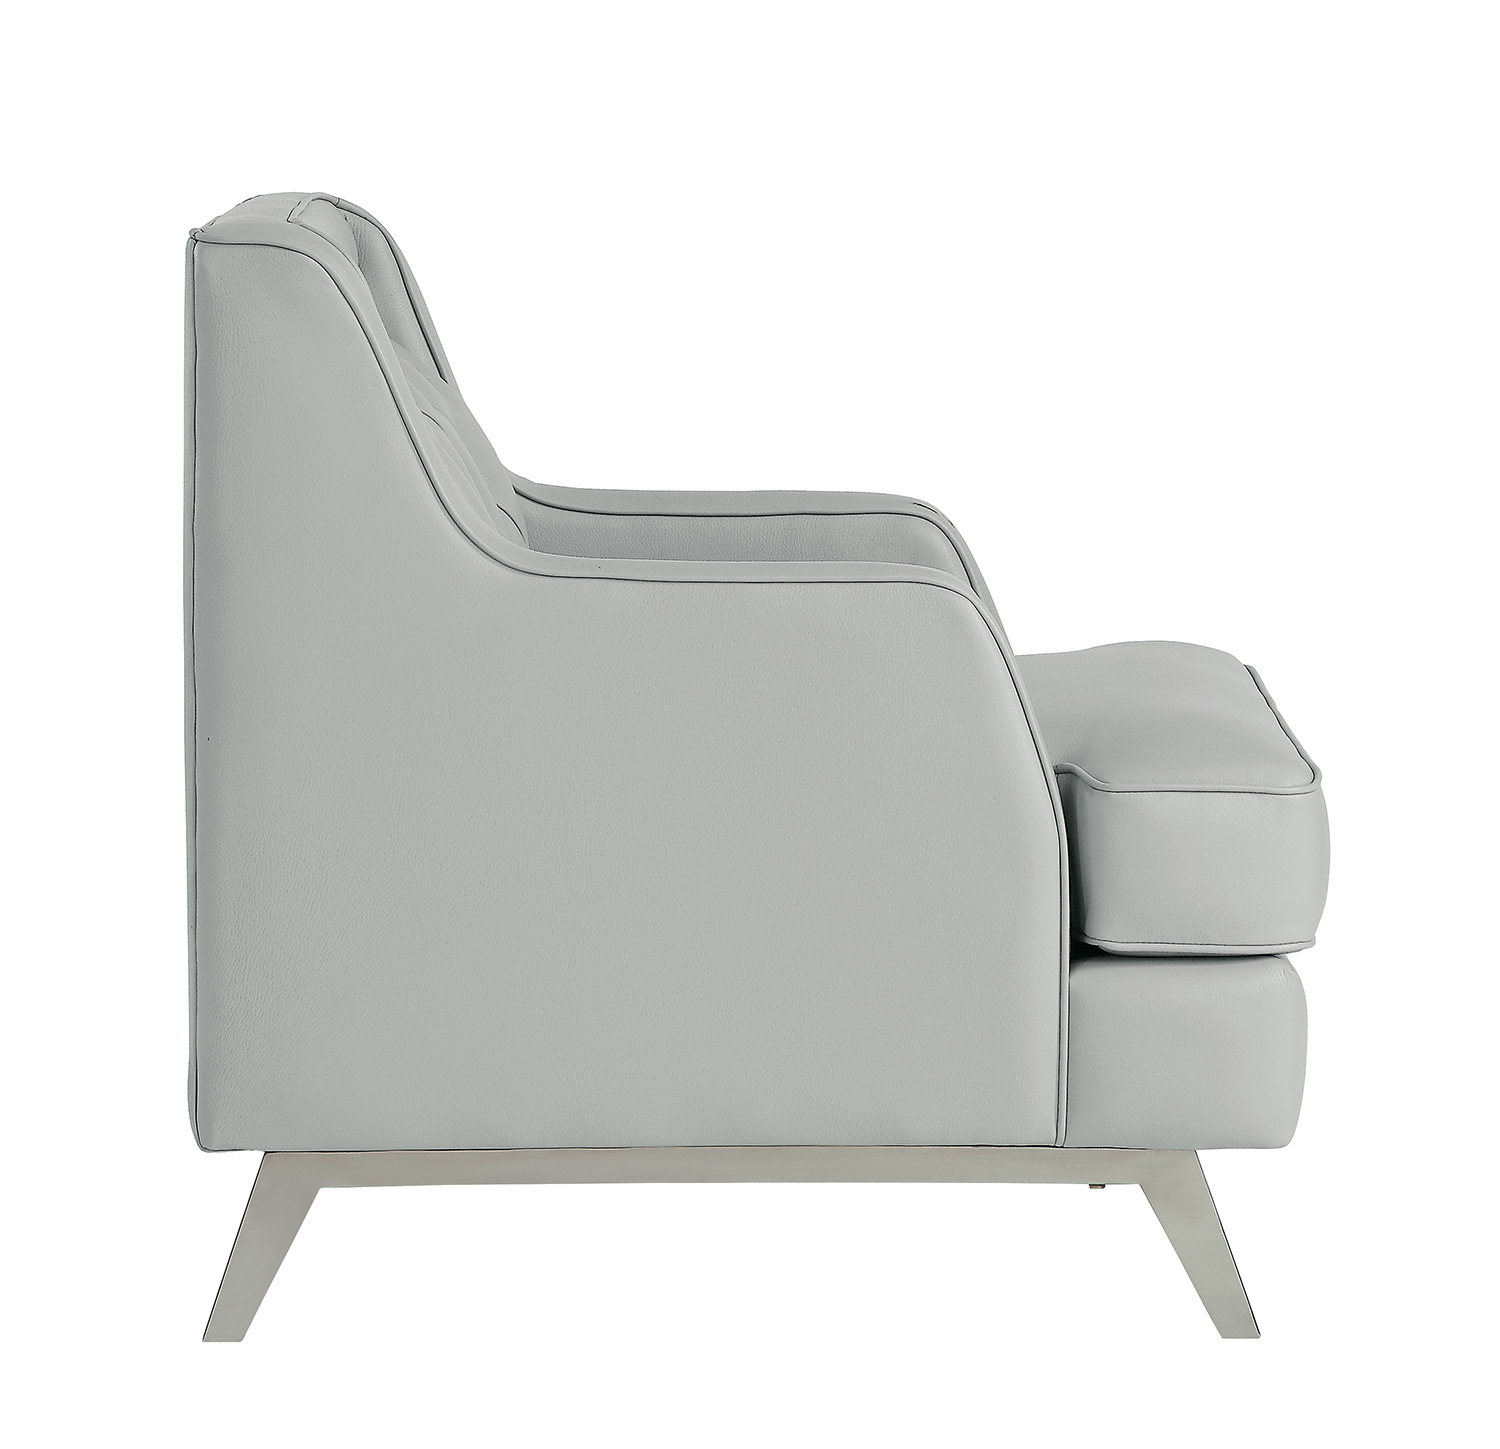 Homelegance Nevaun Chair - Light gray AireHyde